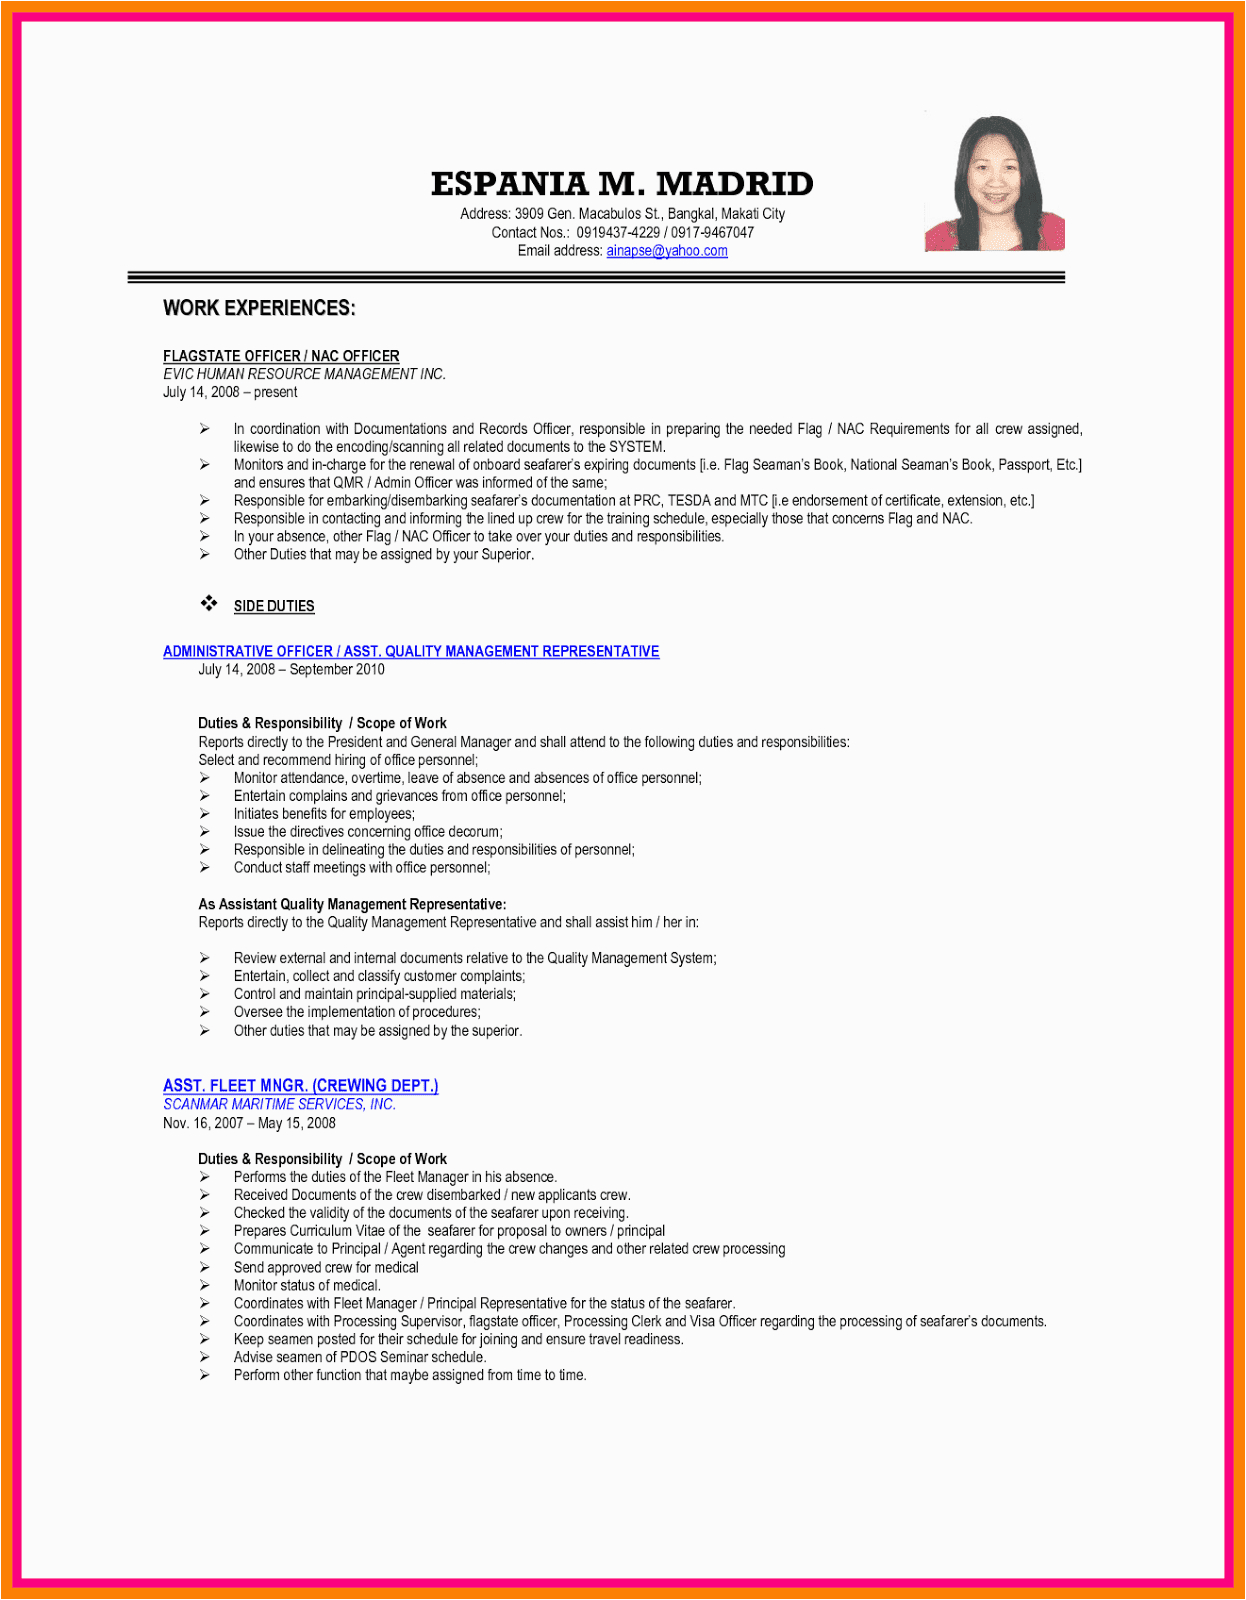 sample resume format for ojt students